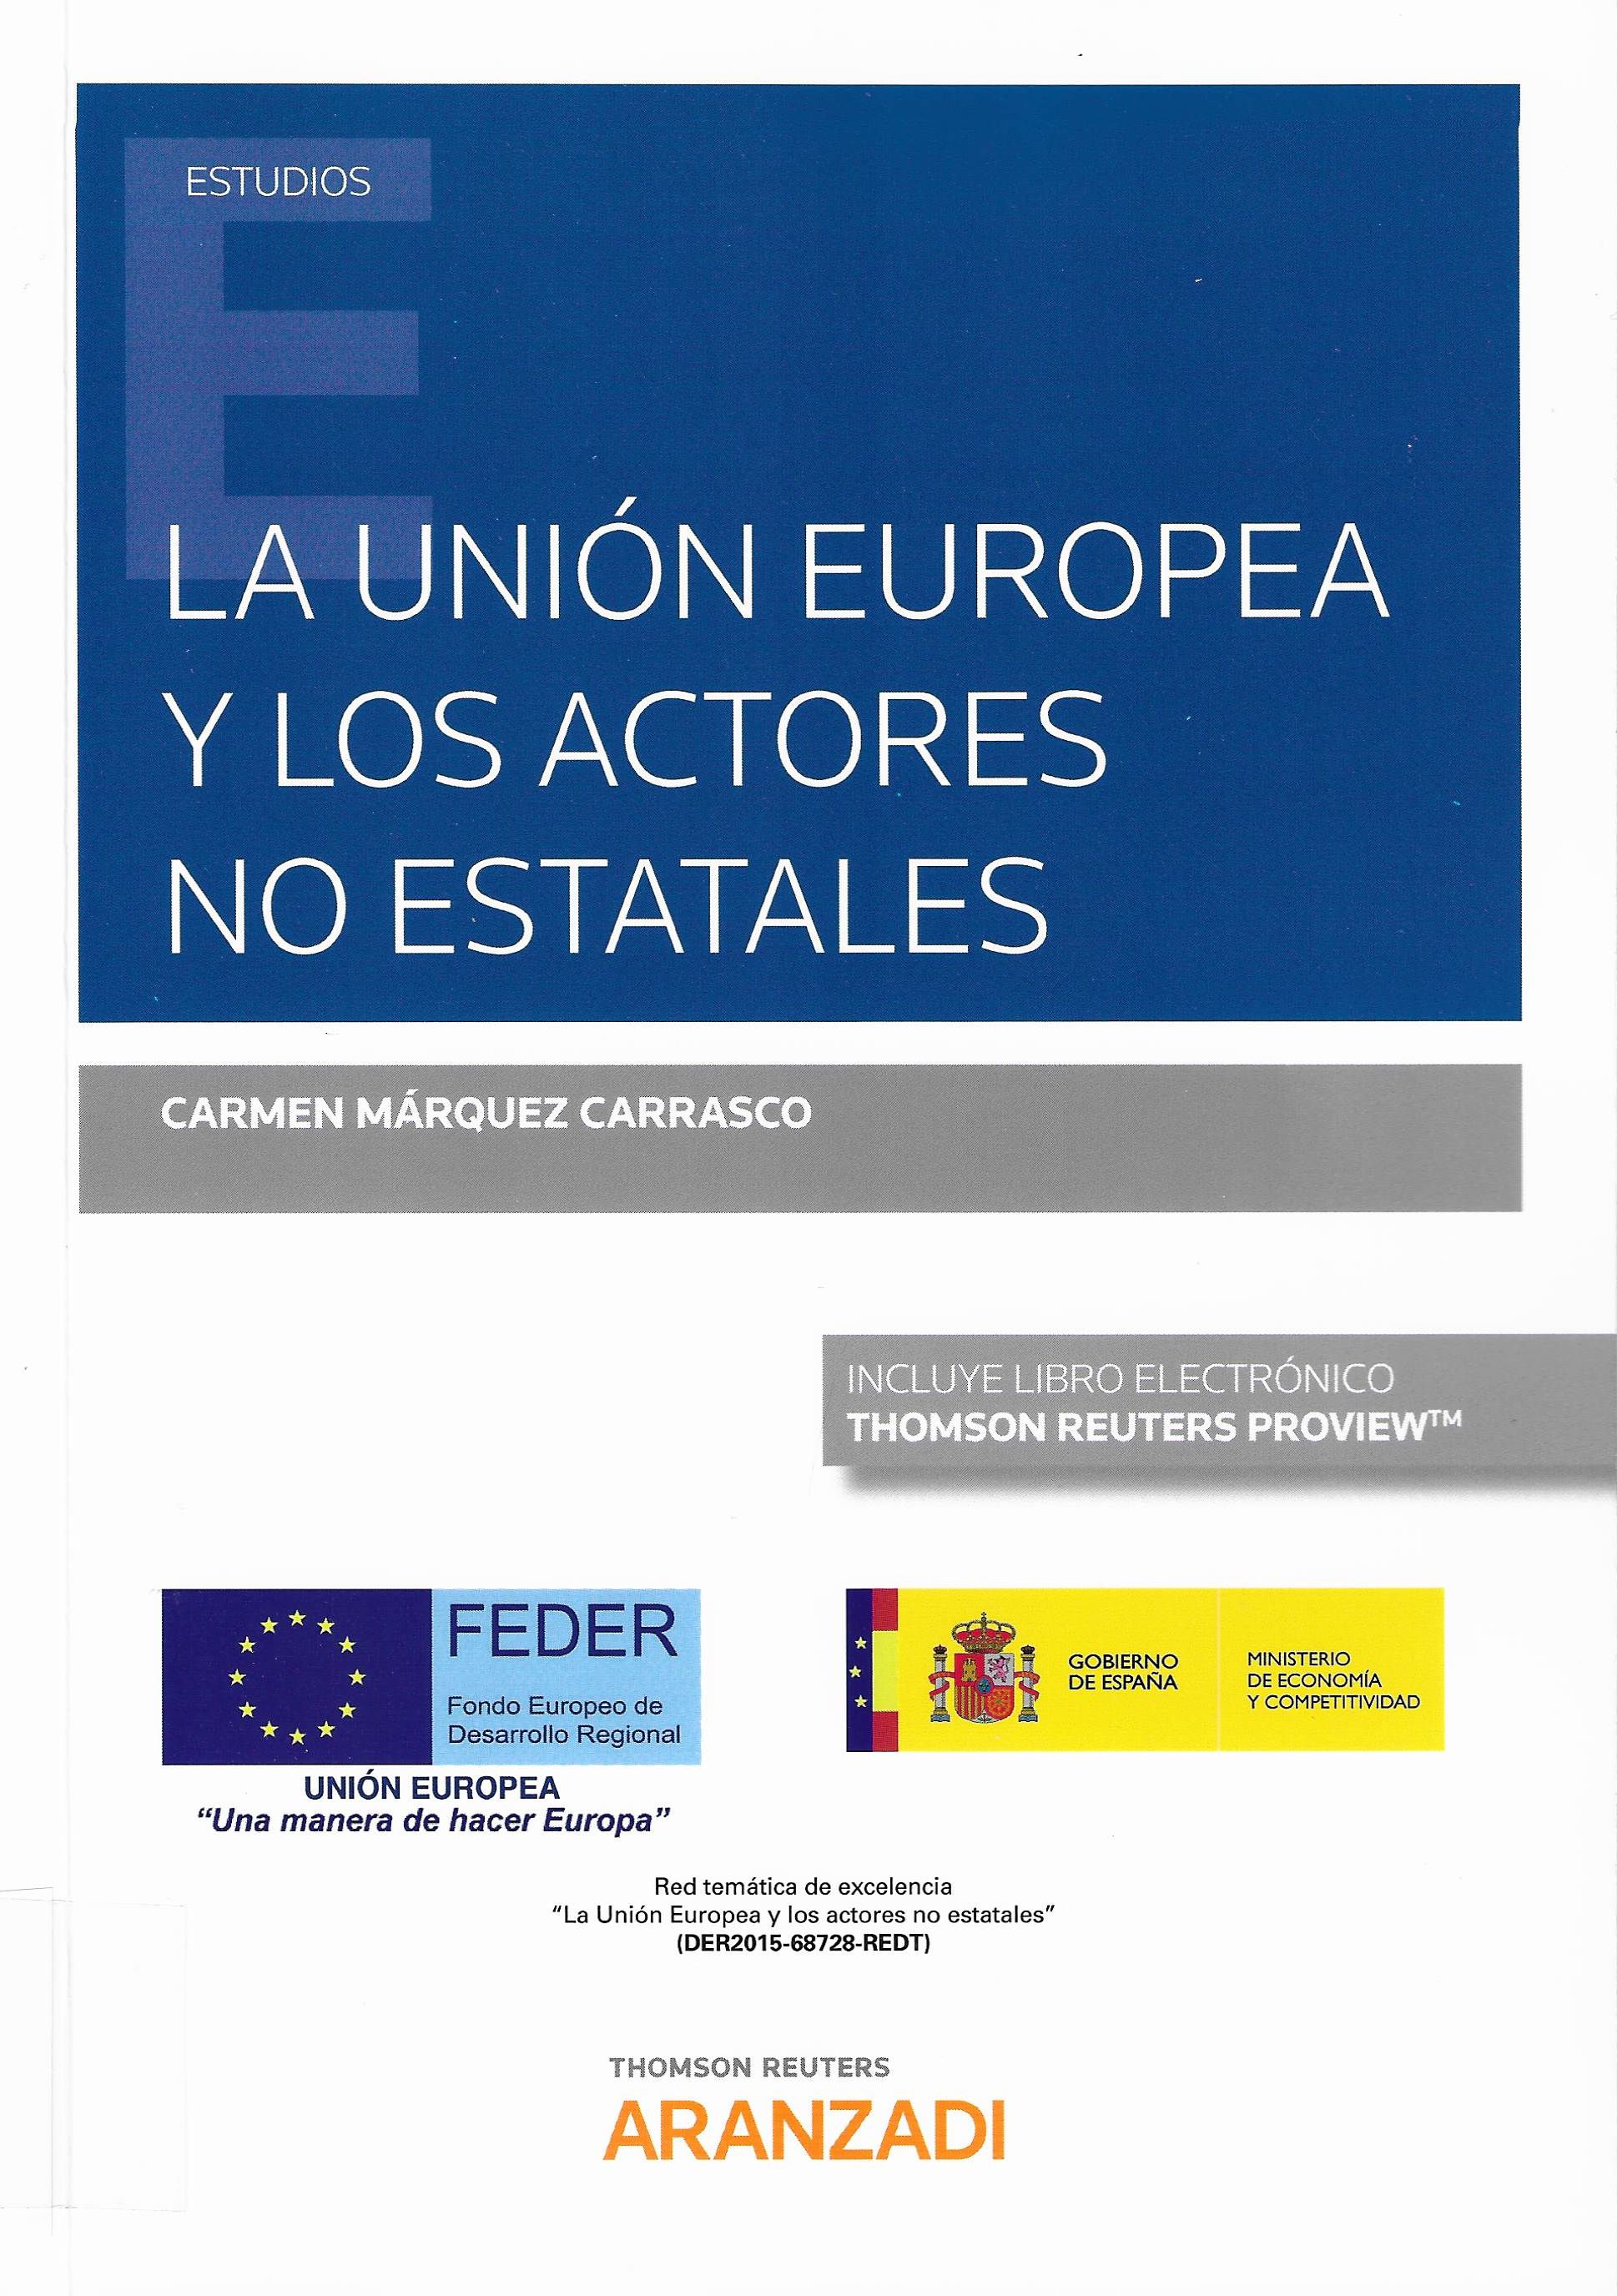 Imagen de portada del libro La Unión Europea y los actores no estatales